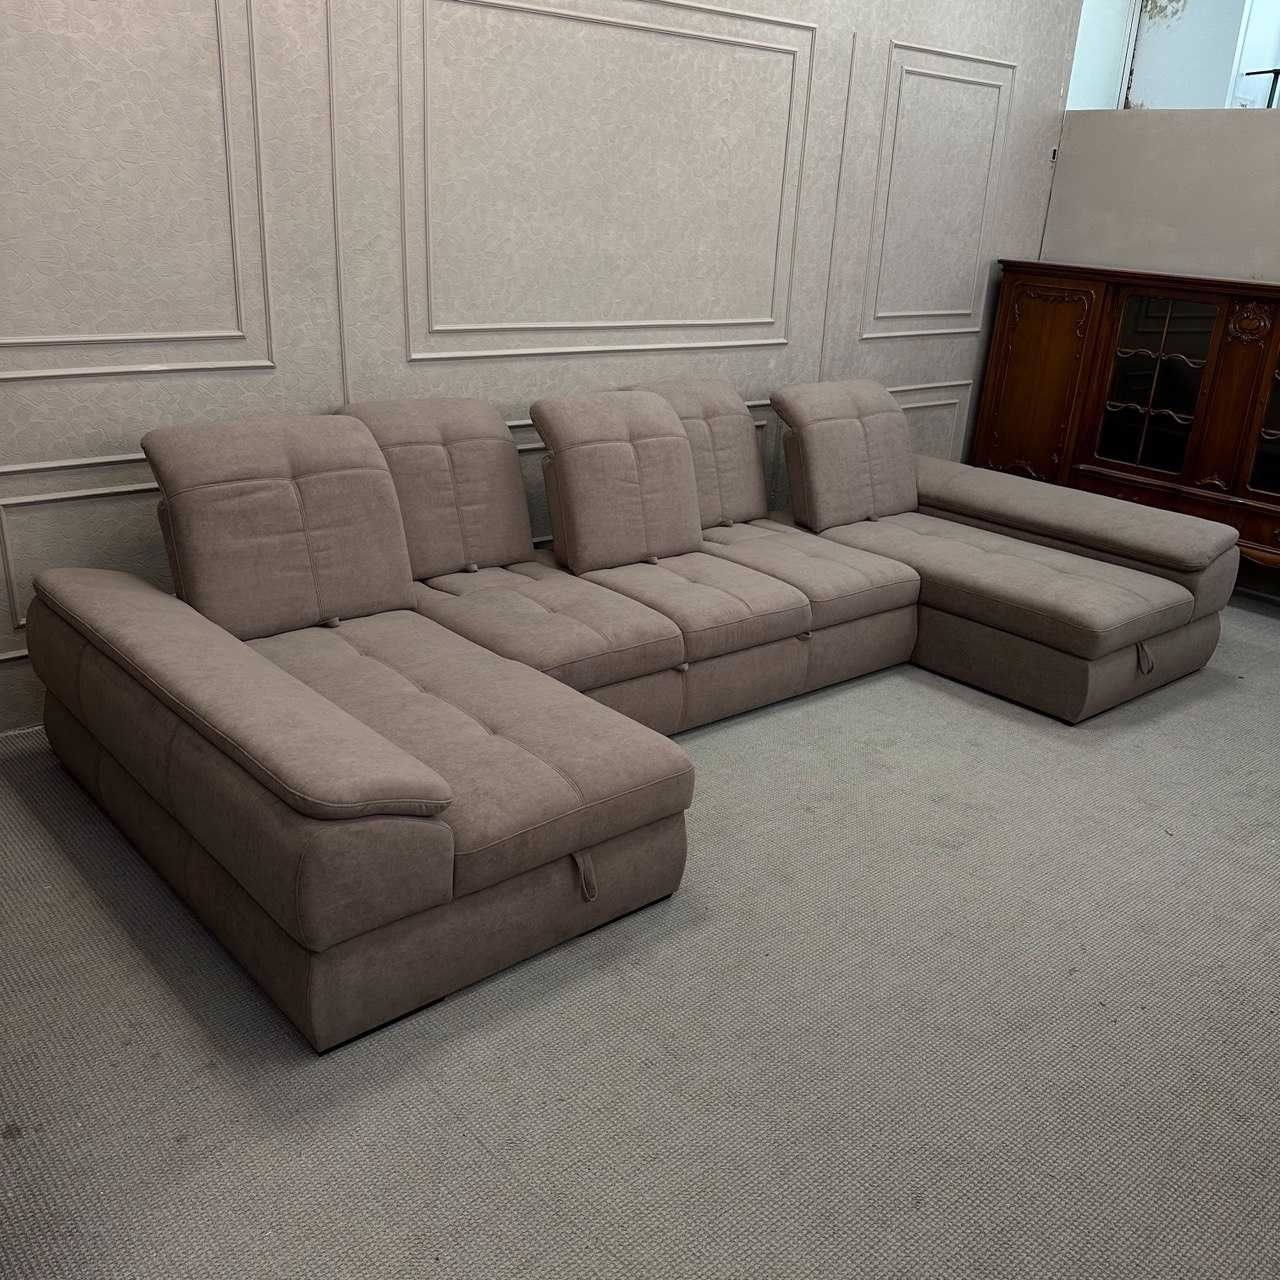 Розкладний диван в тканині, диван п-подібної форми